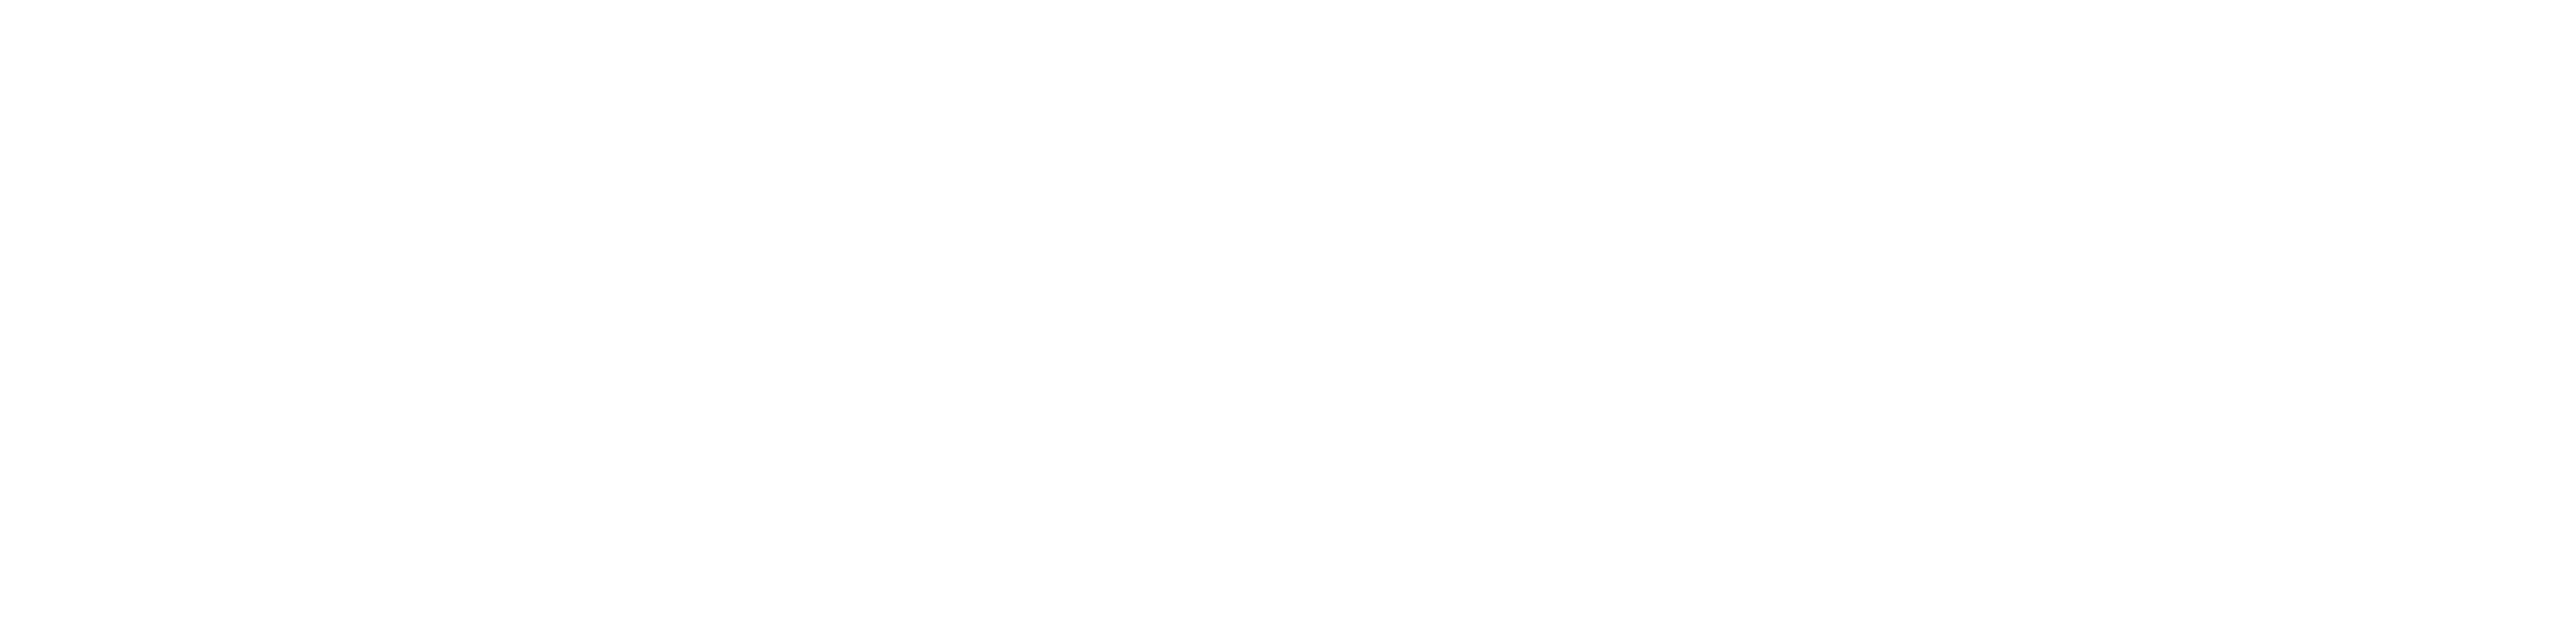 Safe Guarantee